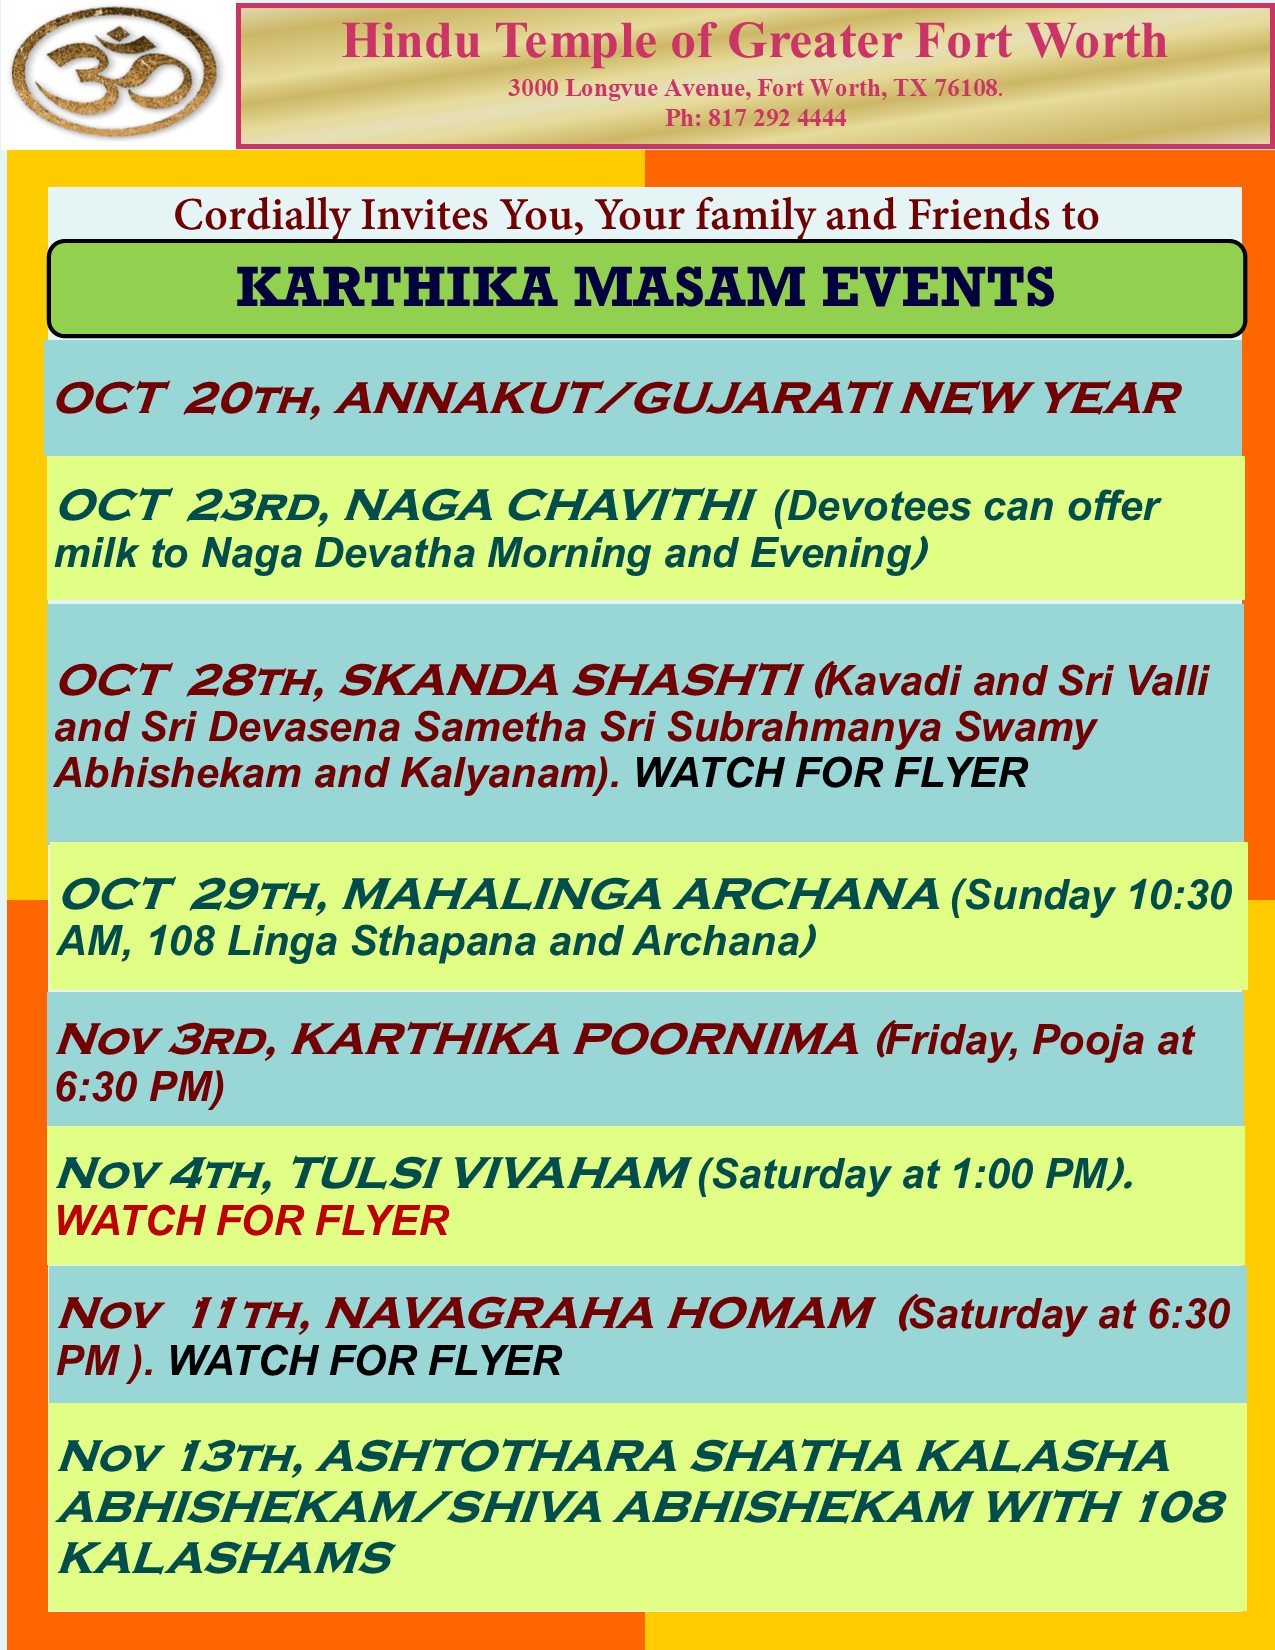 Karthika Masam events